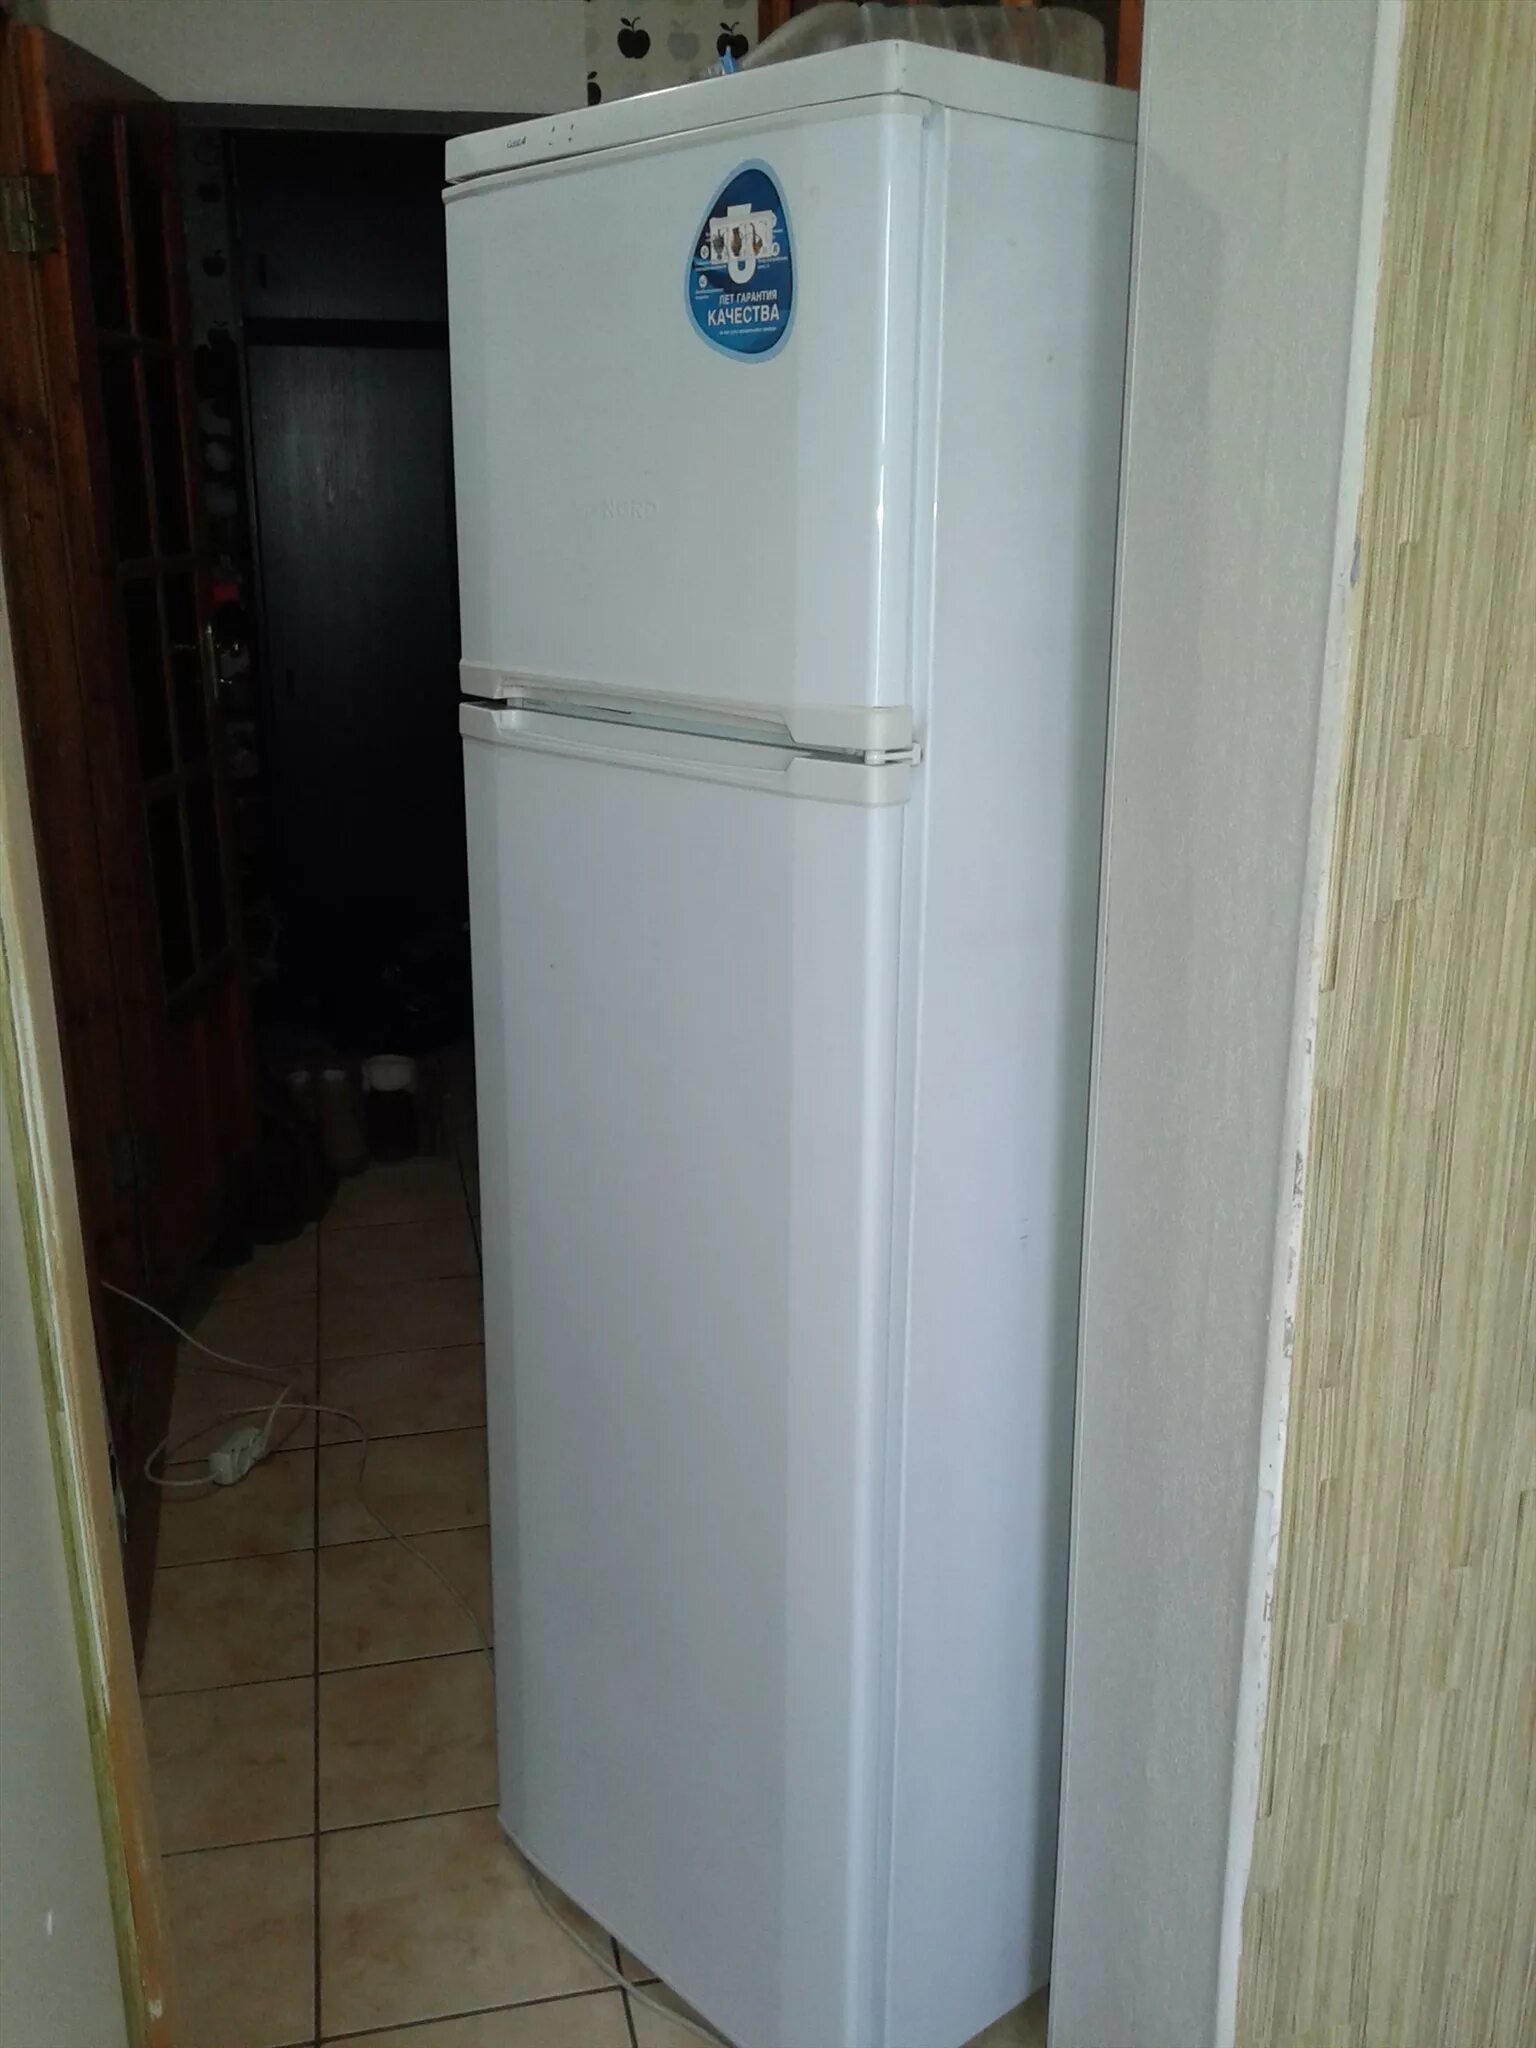 Купить бу холодильник в новосибирске